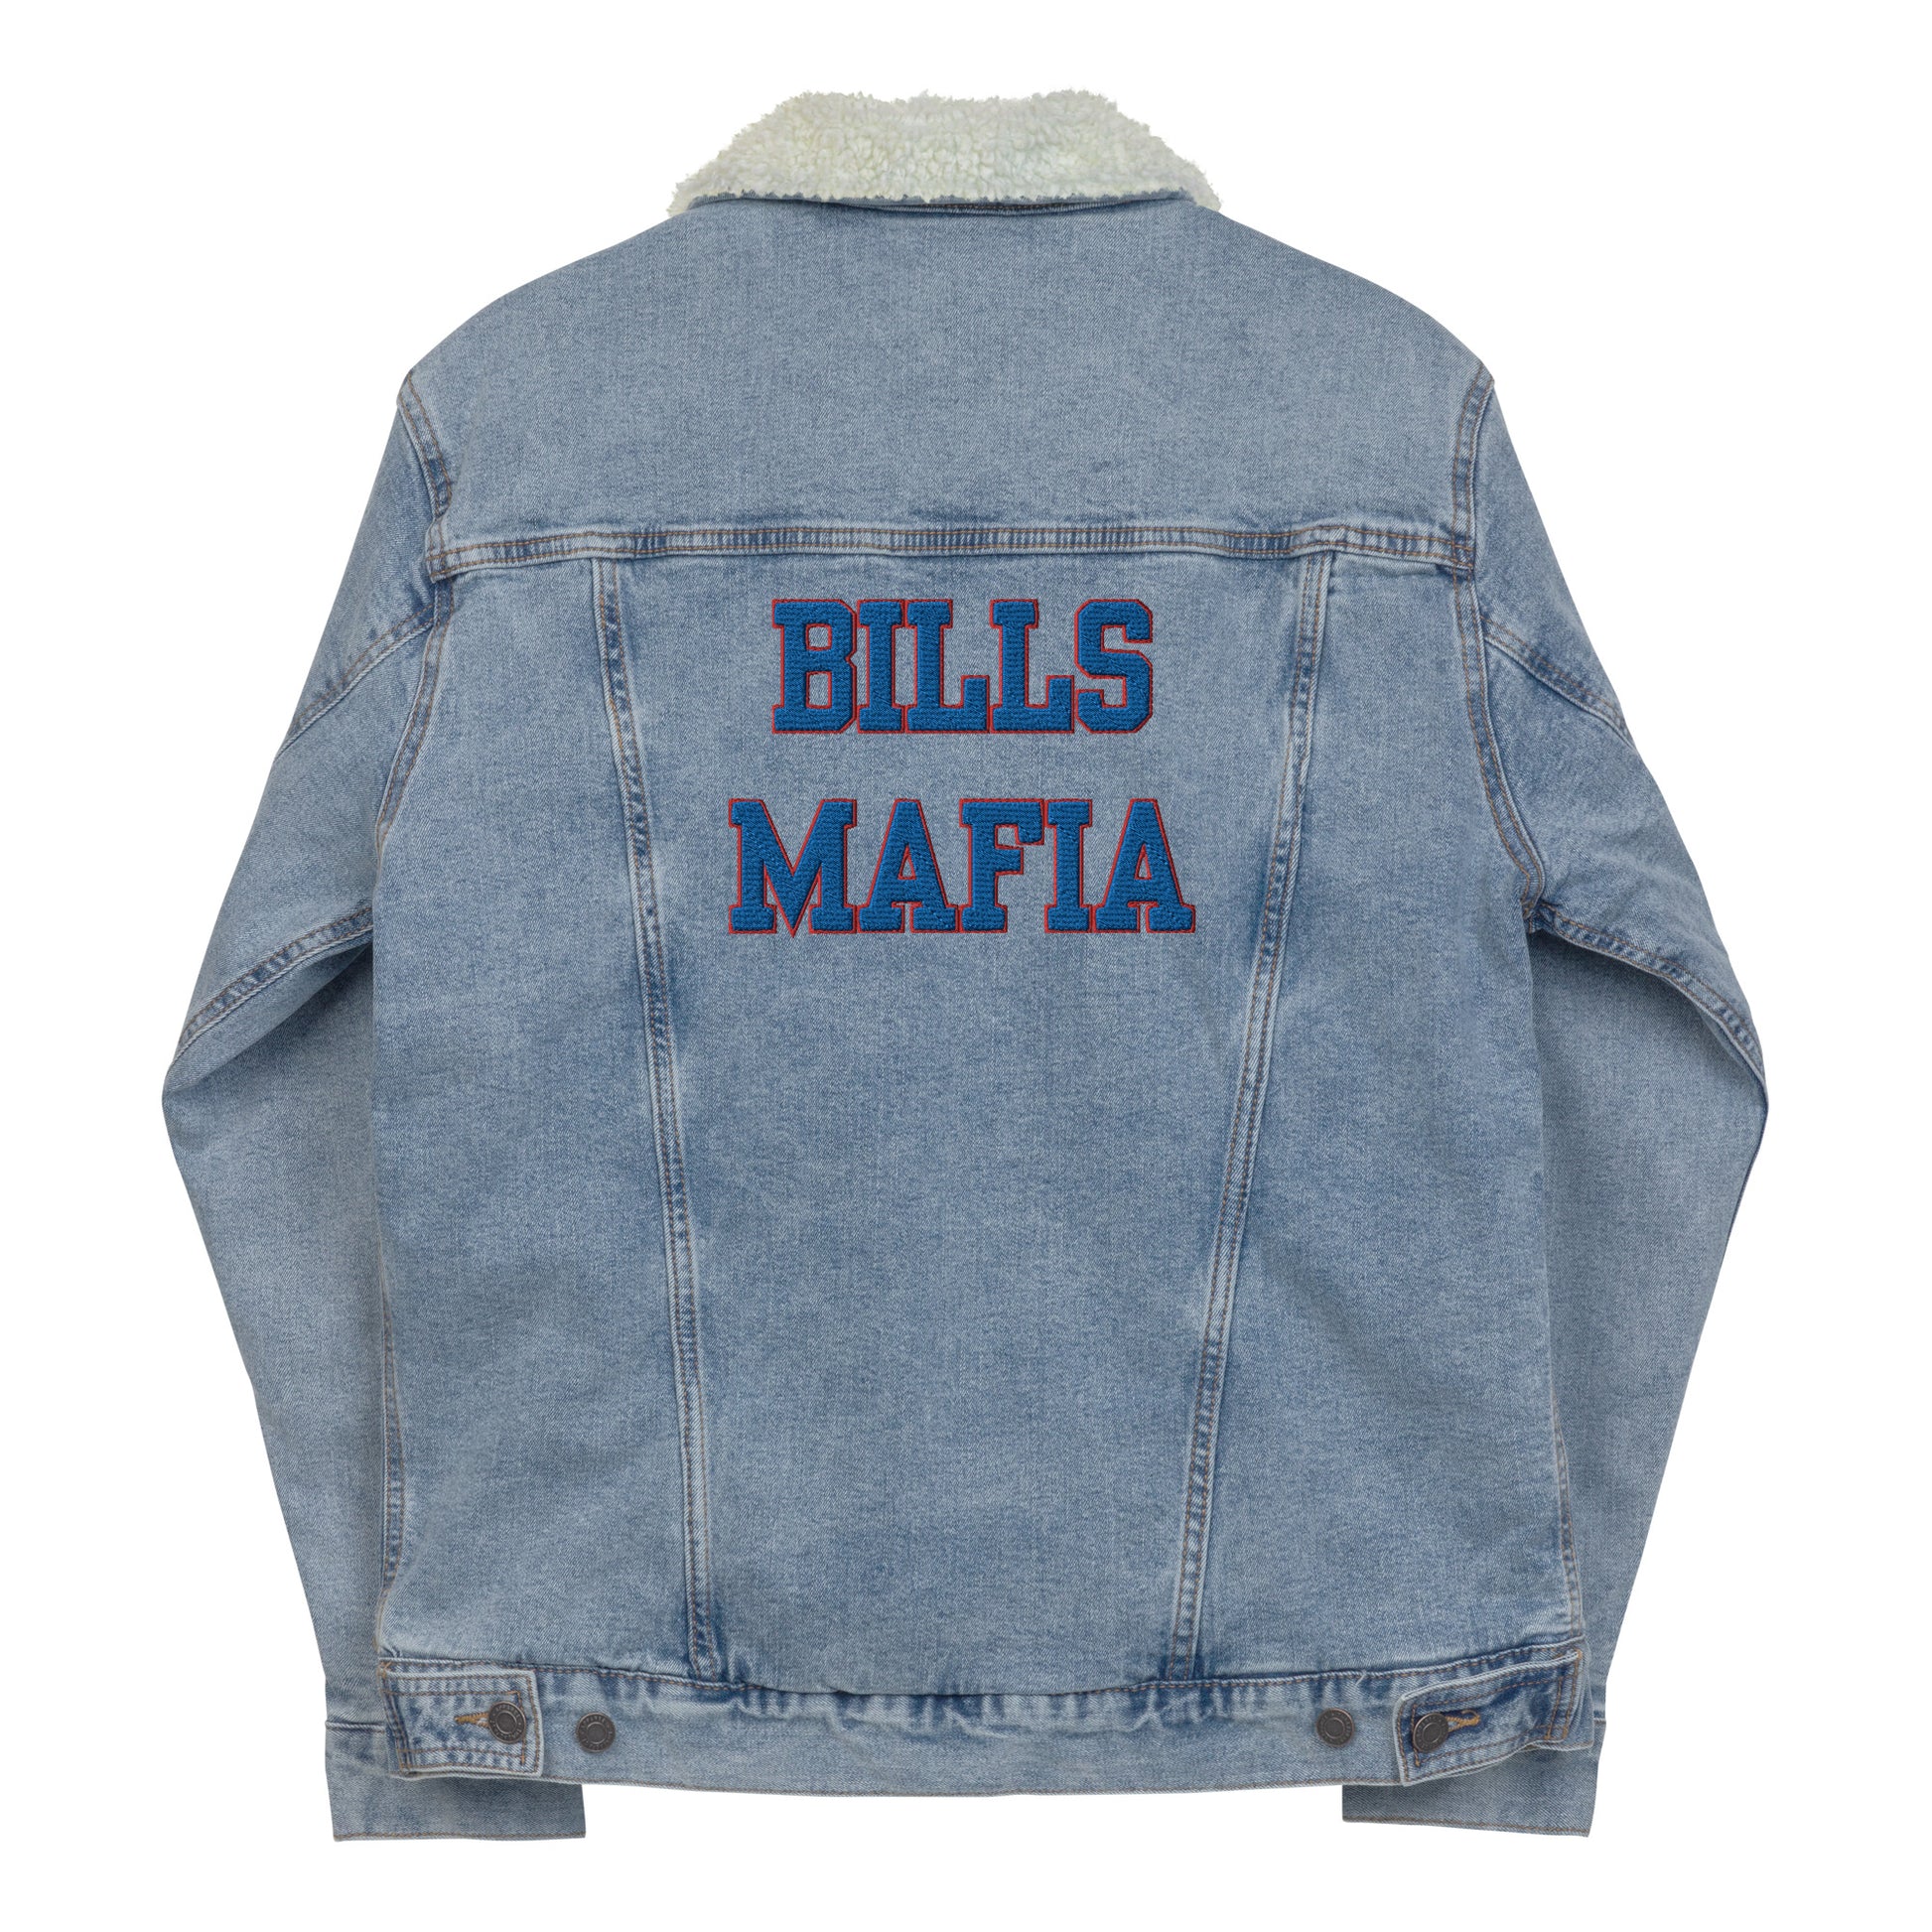 Bills Mafia Denim Jean Sherpa Jacket | Sporti Bae 3XL